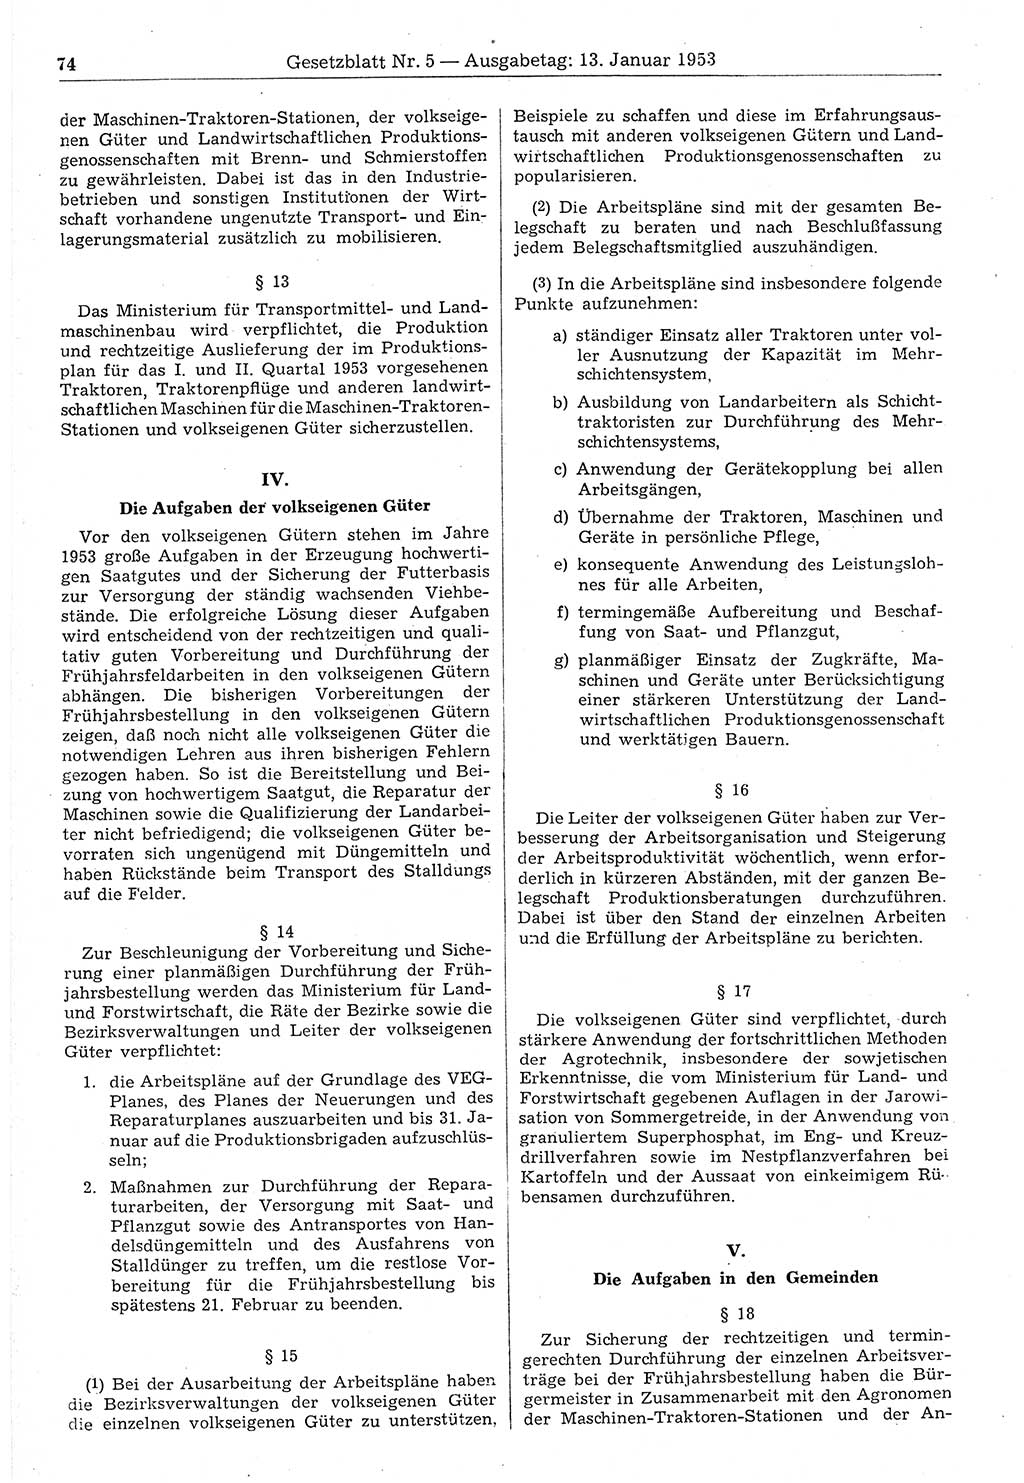 Gesetzblatt (GBl.) der Deutschen Demokratischen Republik (DDR) 1953, Seite 74 (GBl. DDR 1953, S. 74)